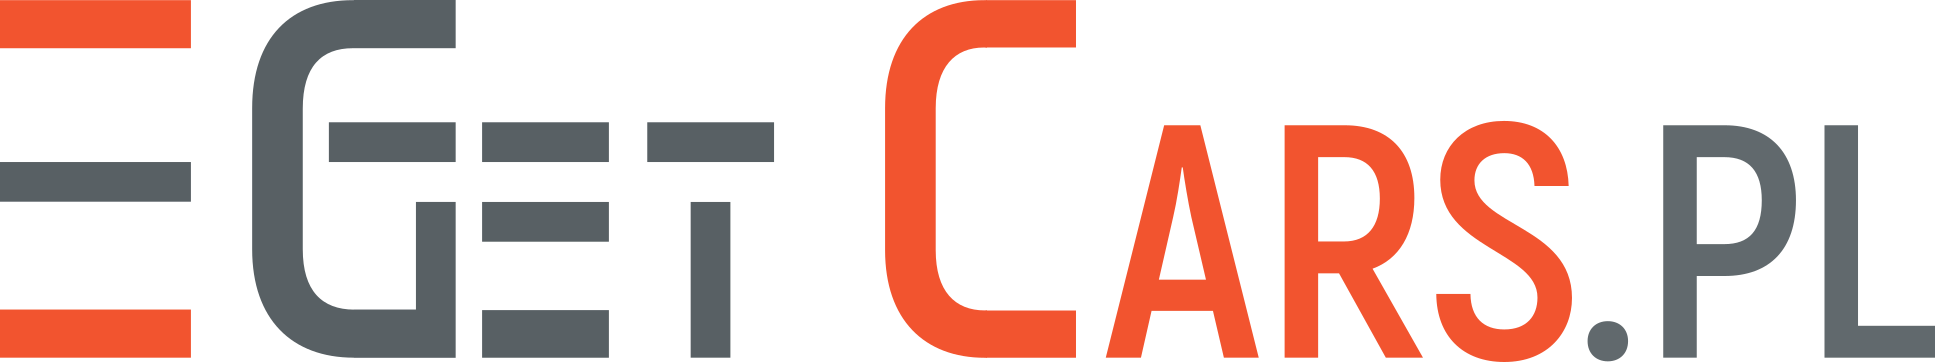 GetCars Logo